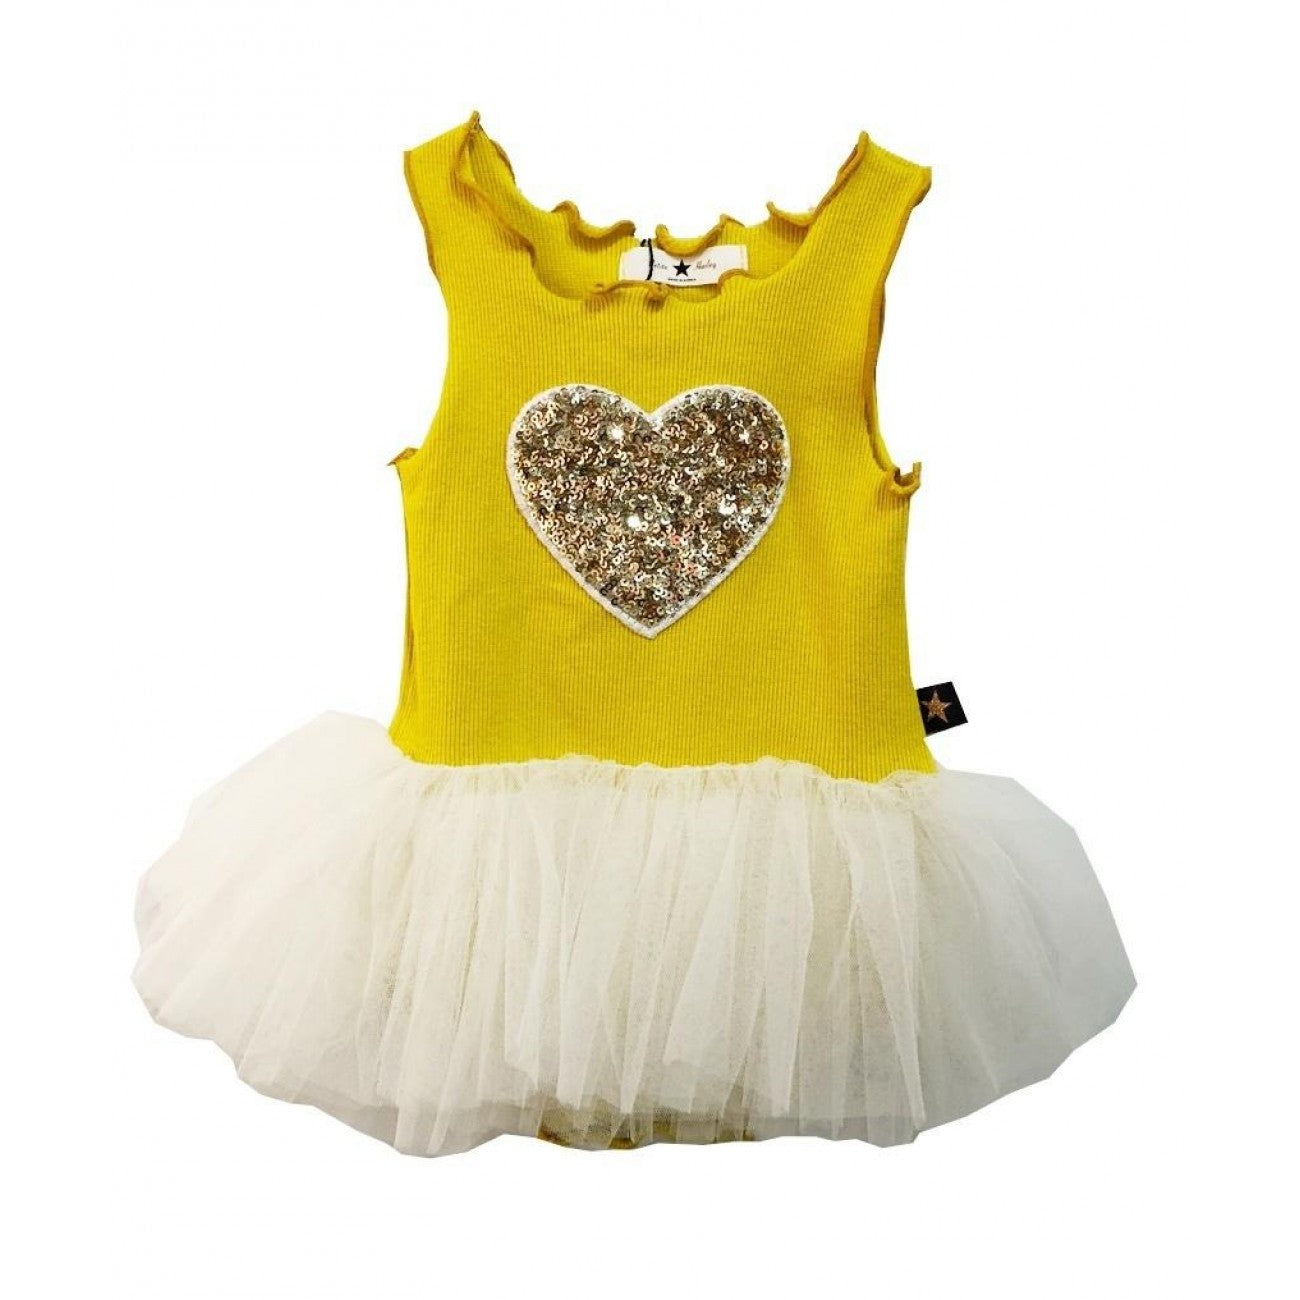 PH HEART BABY TUTU DRESS Yellow